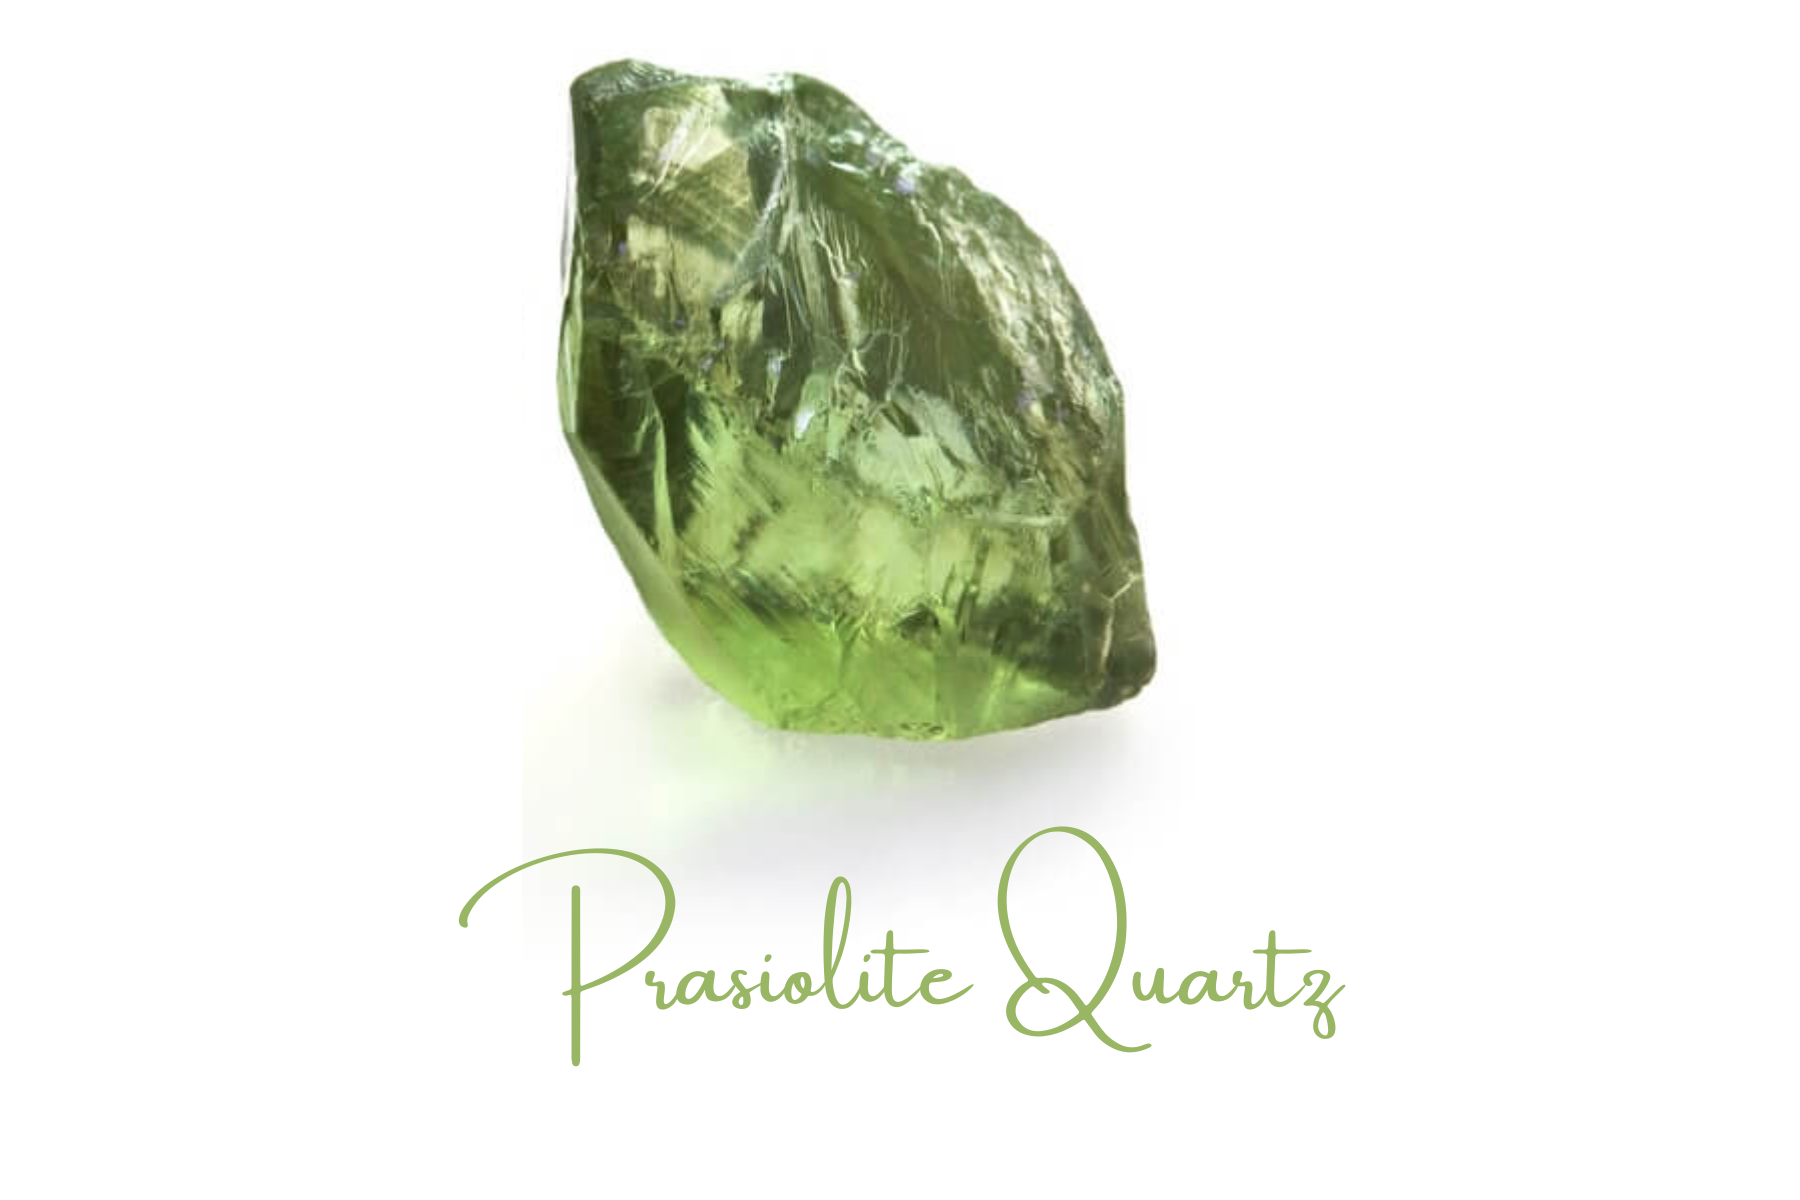 A transparent Prasiolite quartz crystal